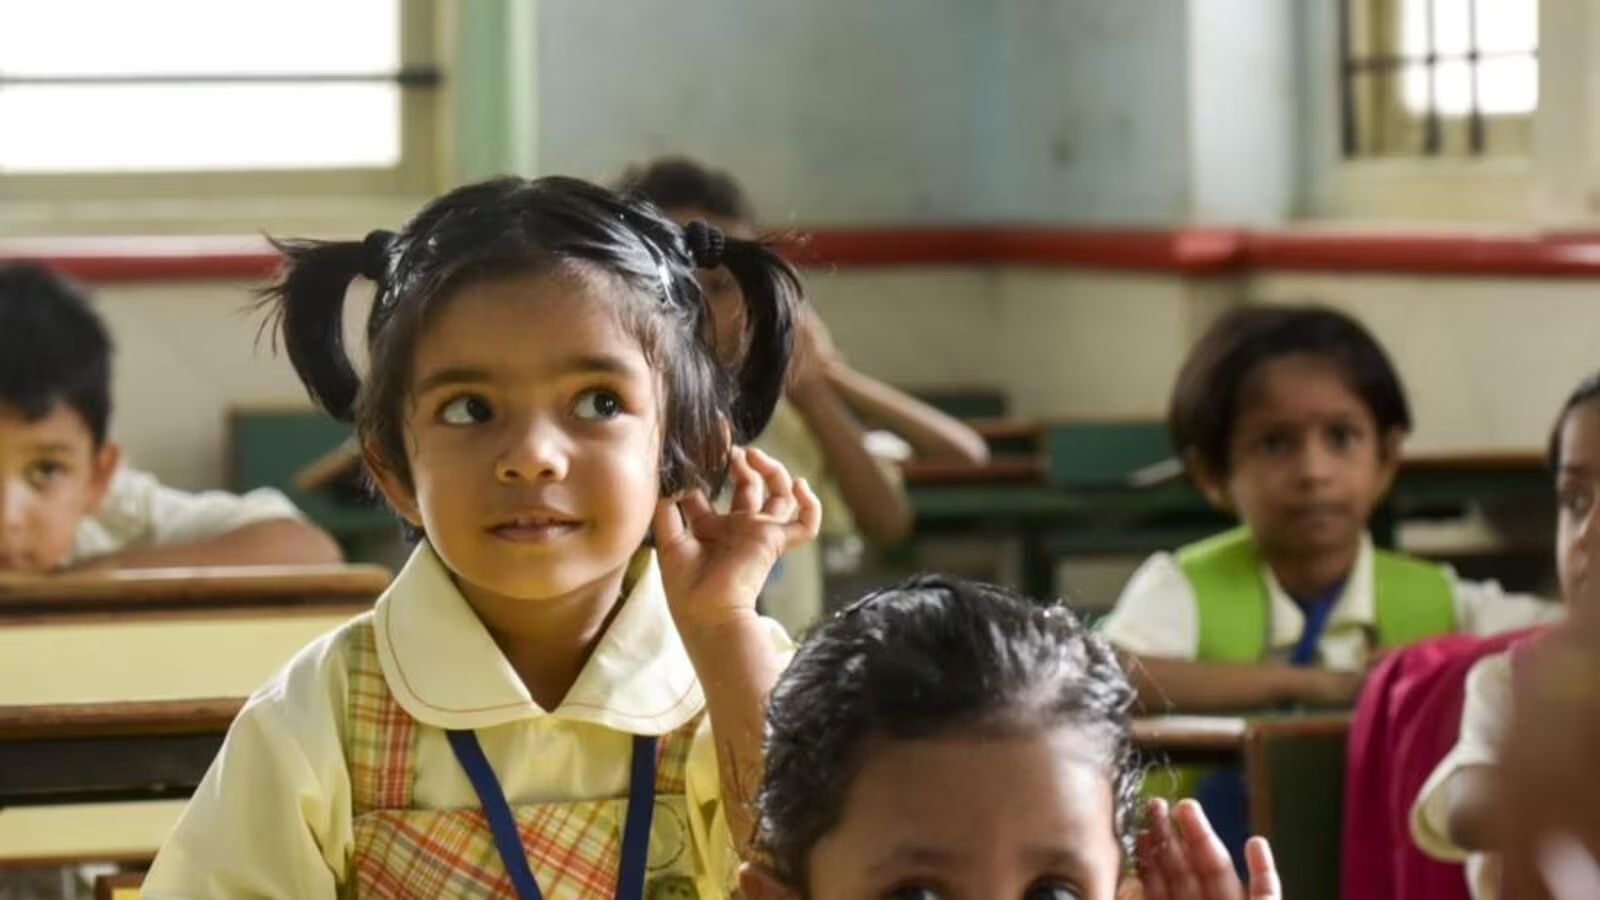 Every Right for Every Child: उत्तर प्रदेश सरकार ने शिक्षा में समानता के लिए ‘हर बच्चे के लिए हर अधिकार’ अभियान किया शुरू